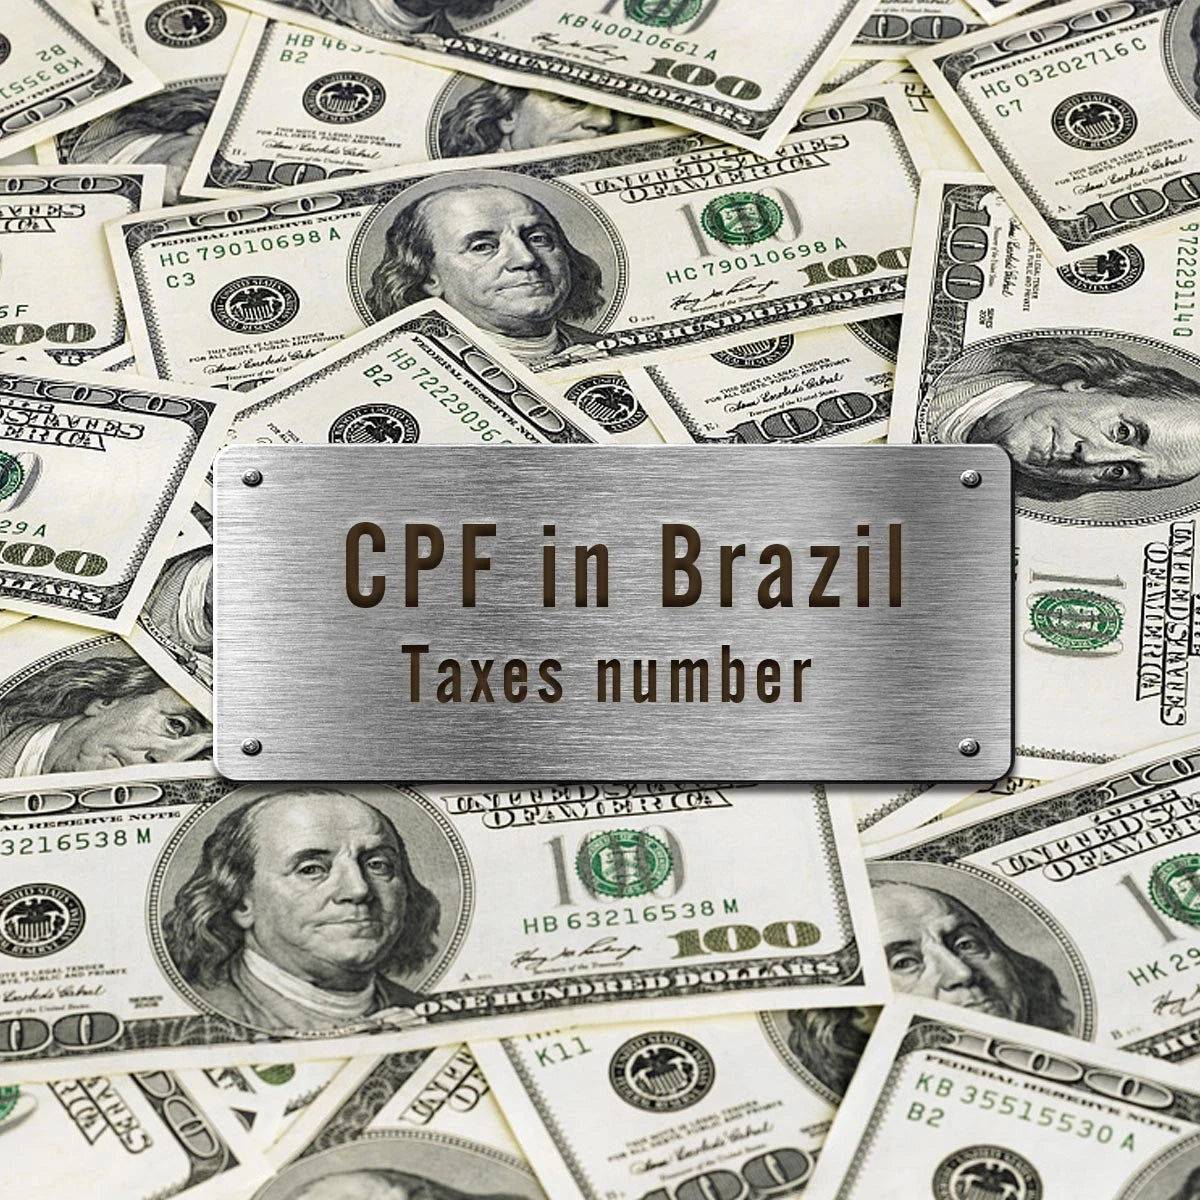 Toutes les commandes (Brésil) ont besoin du numéro d'identification fiscale (CPF)